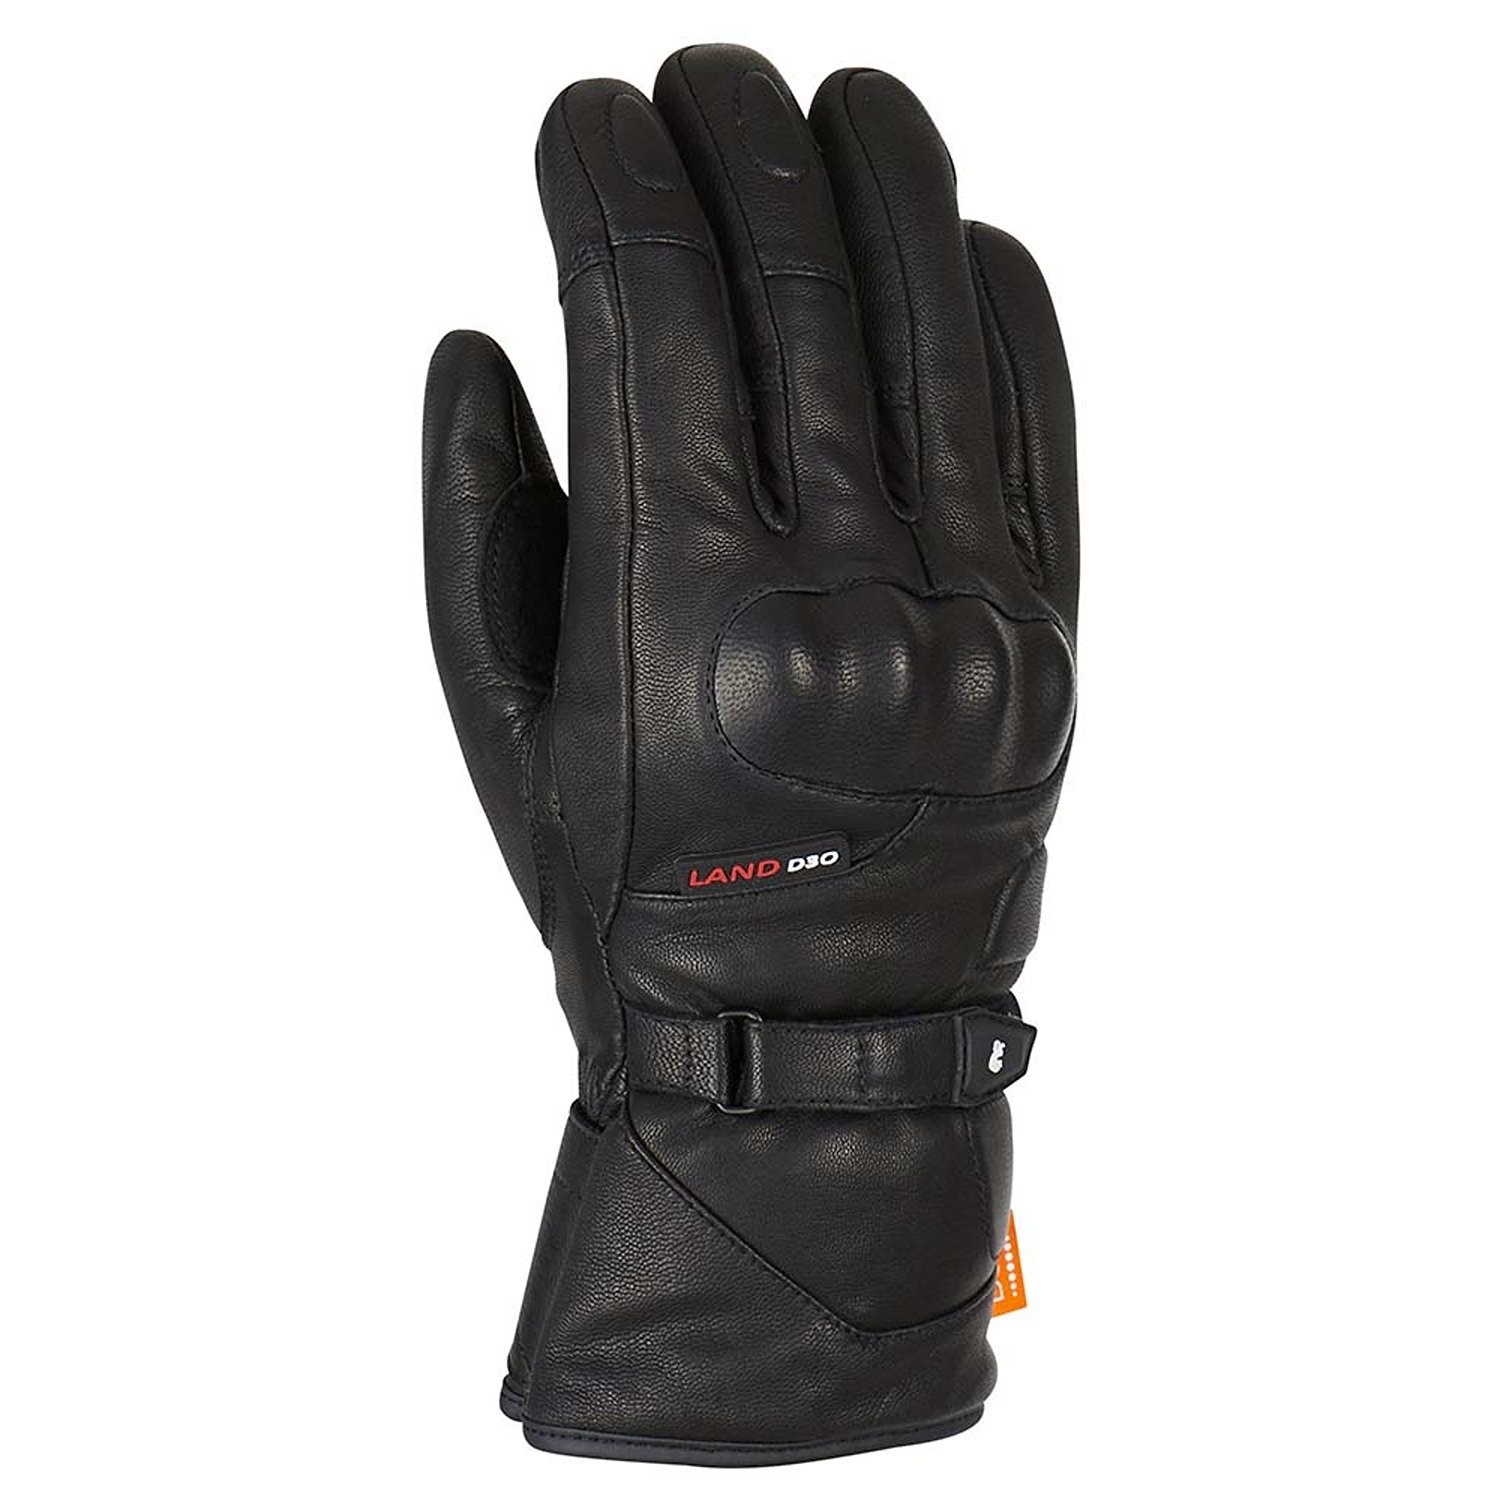 Image of EU Furygan Land DK D30 Gloves Black Taille 3XL